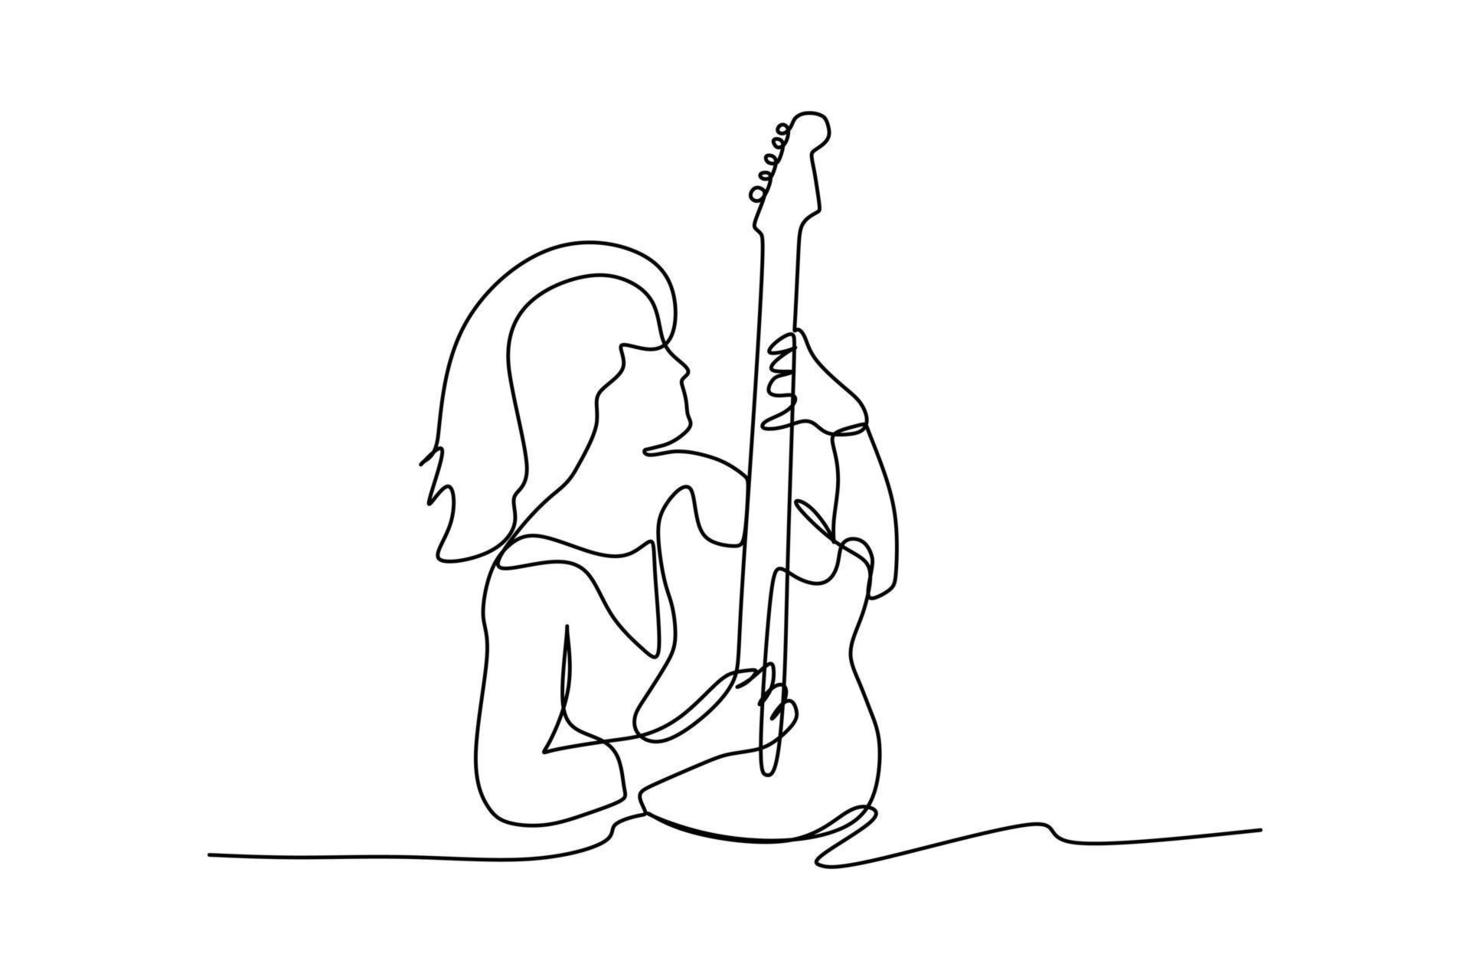 dibujo de línea continua de un rockero guitarrista sentado tocando su guitarra eléctrica. Ilustración de vector de diseño de dibujo gráfico de línea única de concepto de rendimiento de artista de músico dinámico